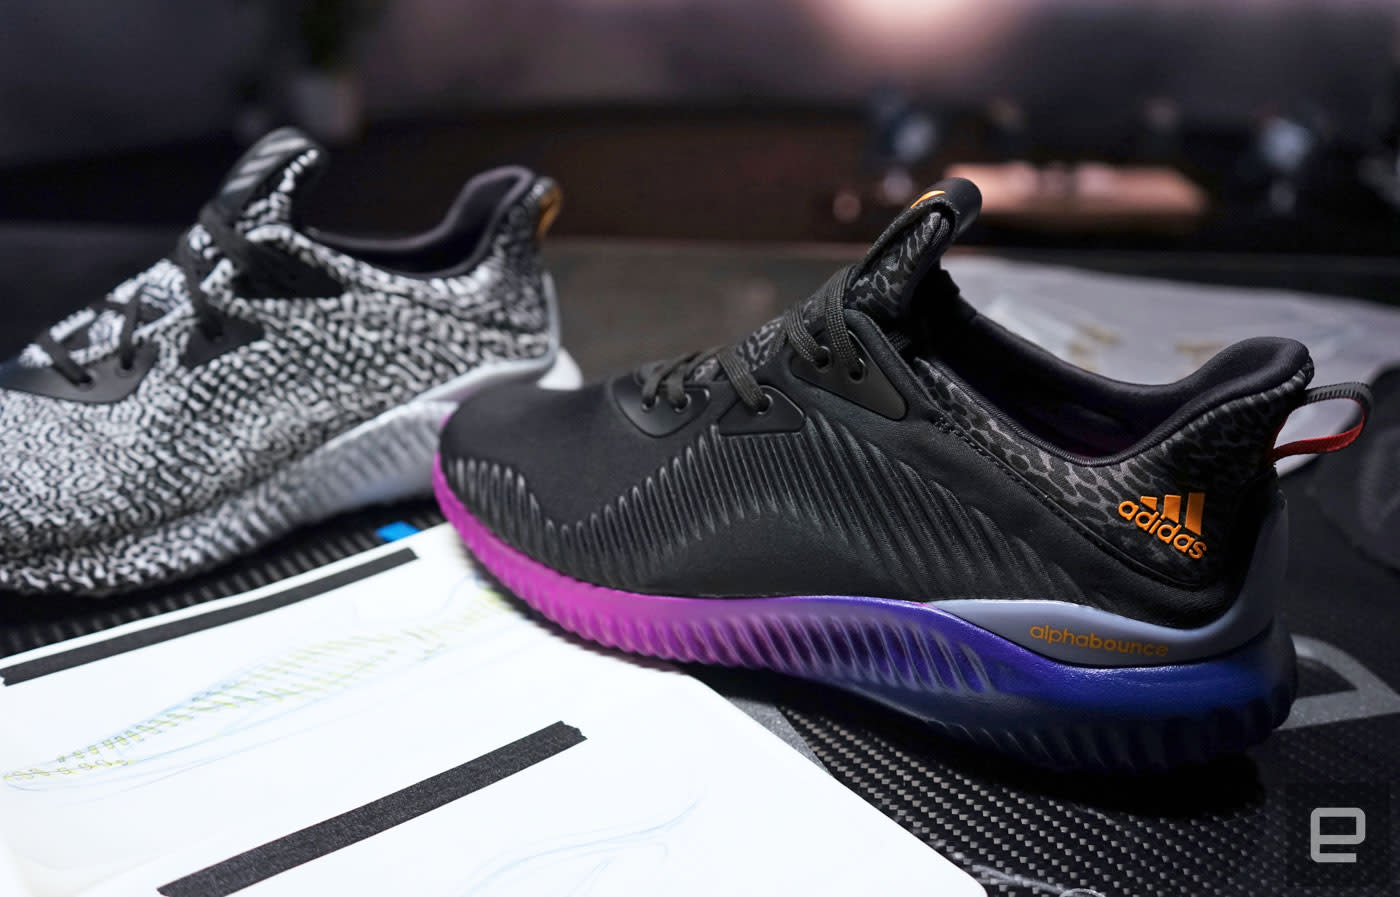 Banyan Bijdragen Infecteren How Adidas is using motion capture to reinvent running shoes | Engadget